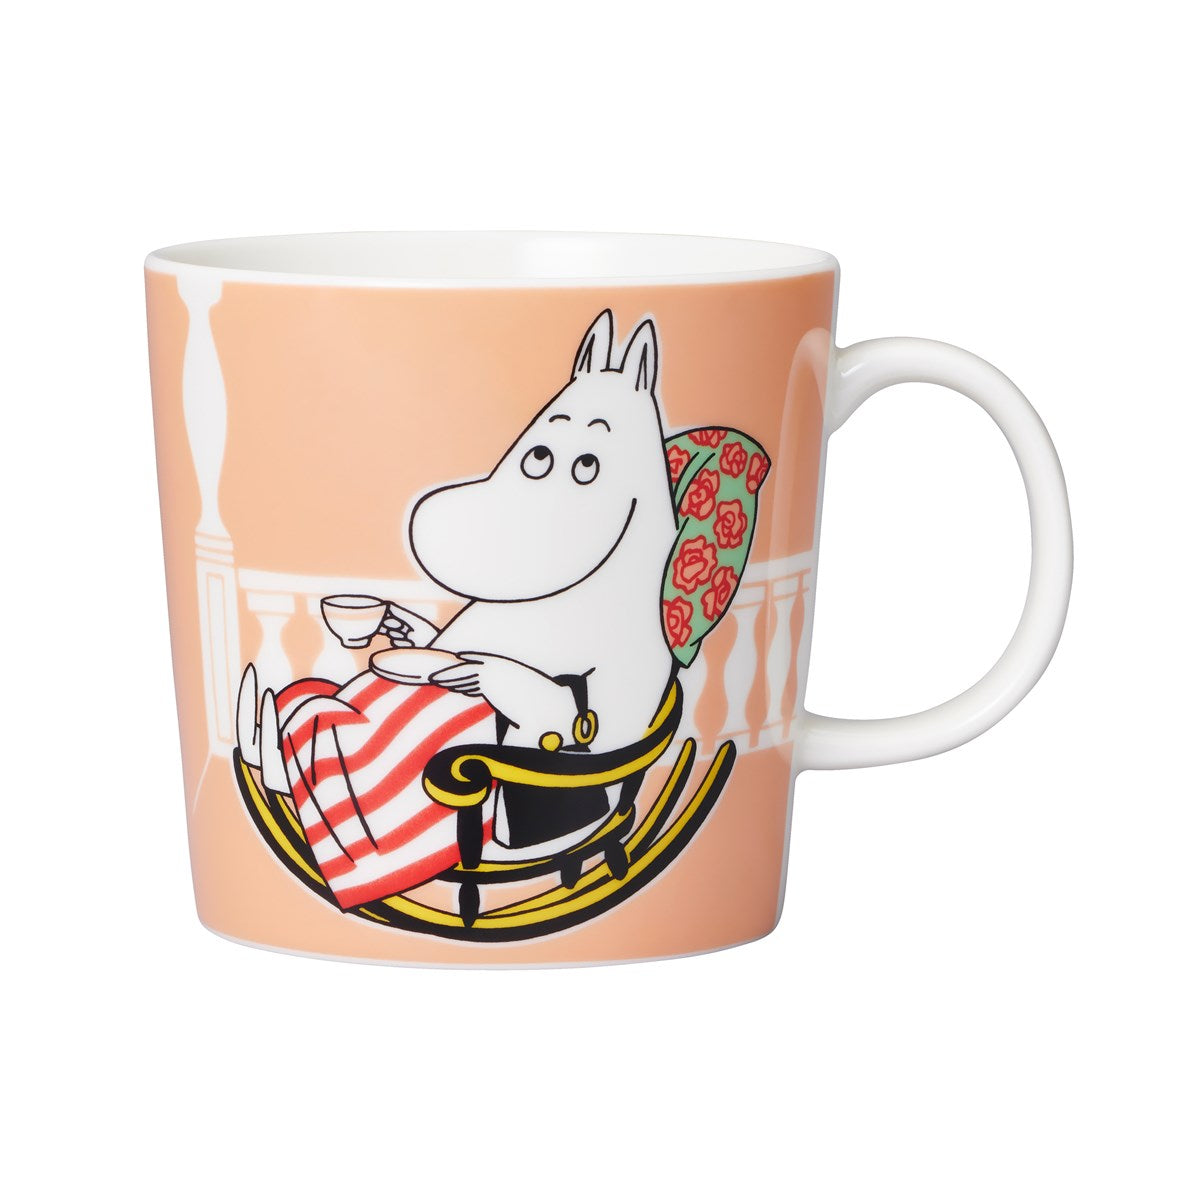 Moomin Arabia / iittala mug 300ml  / 10oz  Moominmamma Marmalade mug